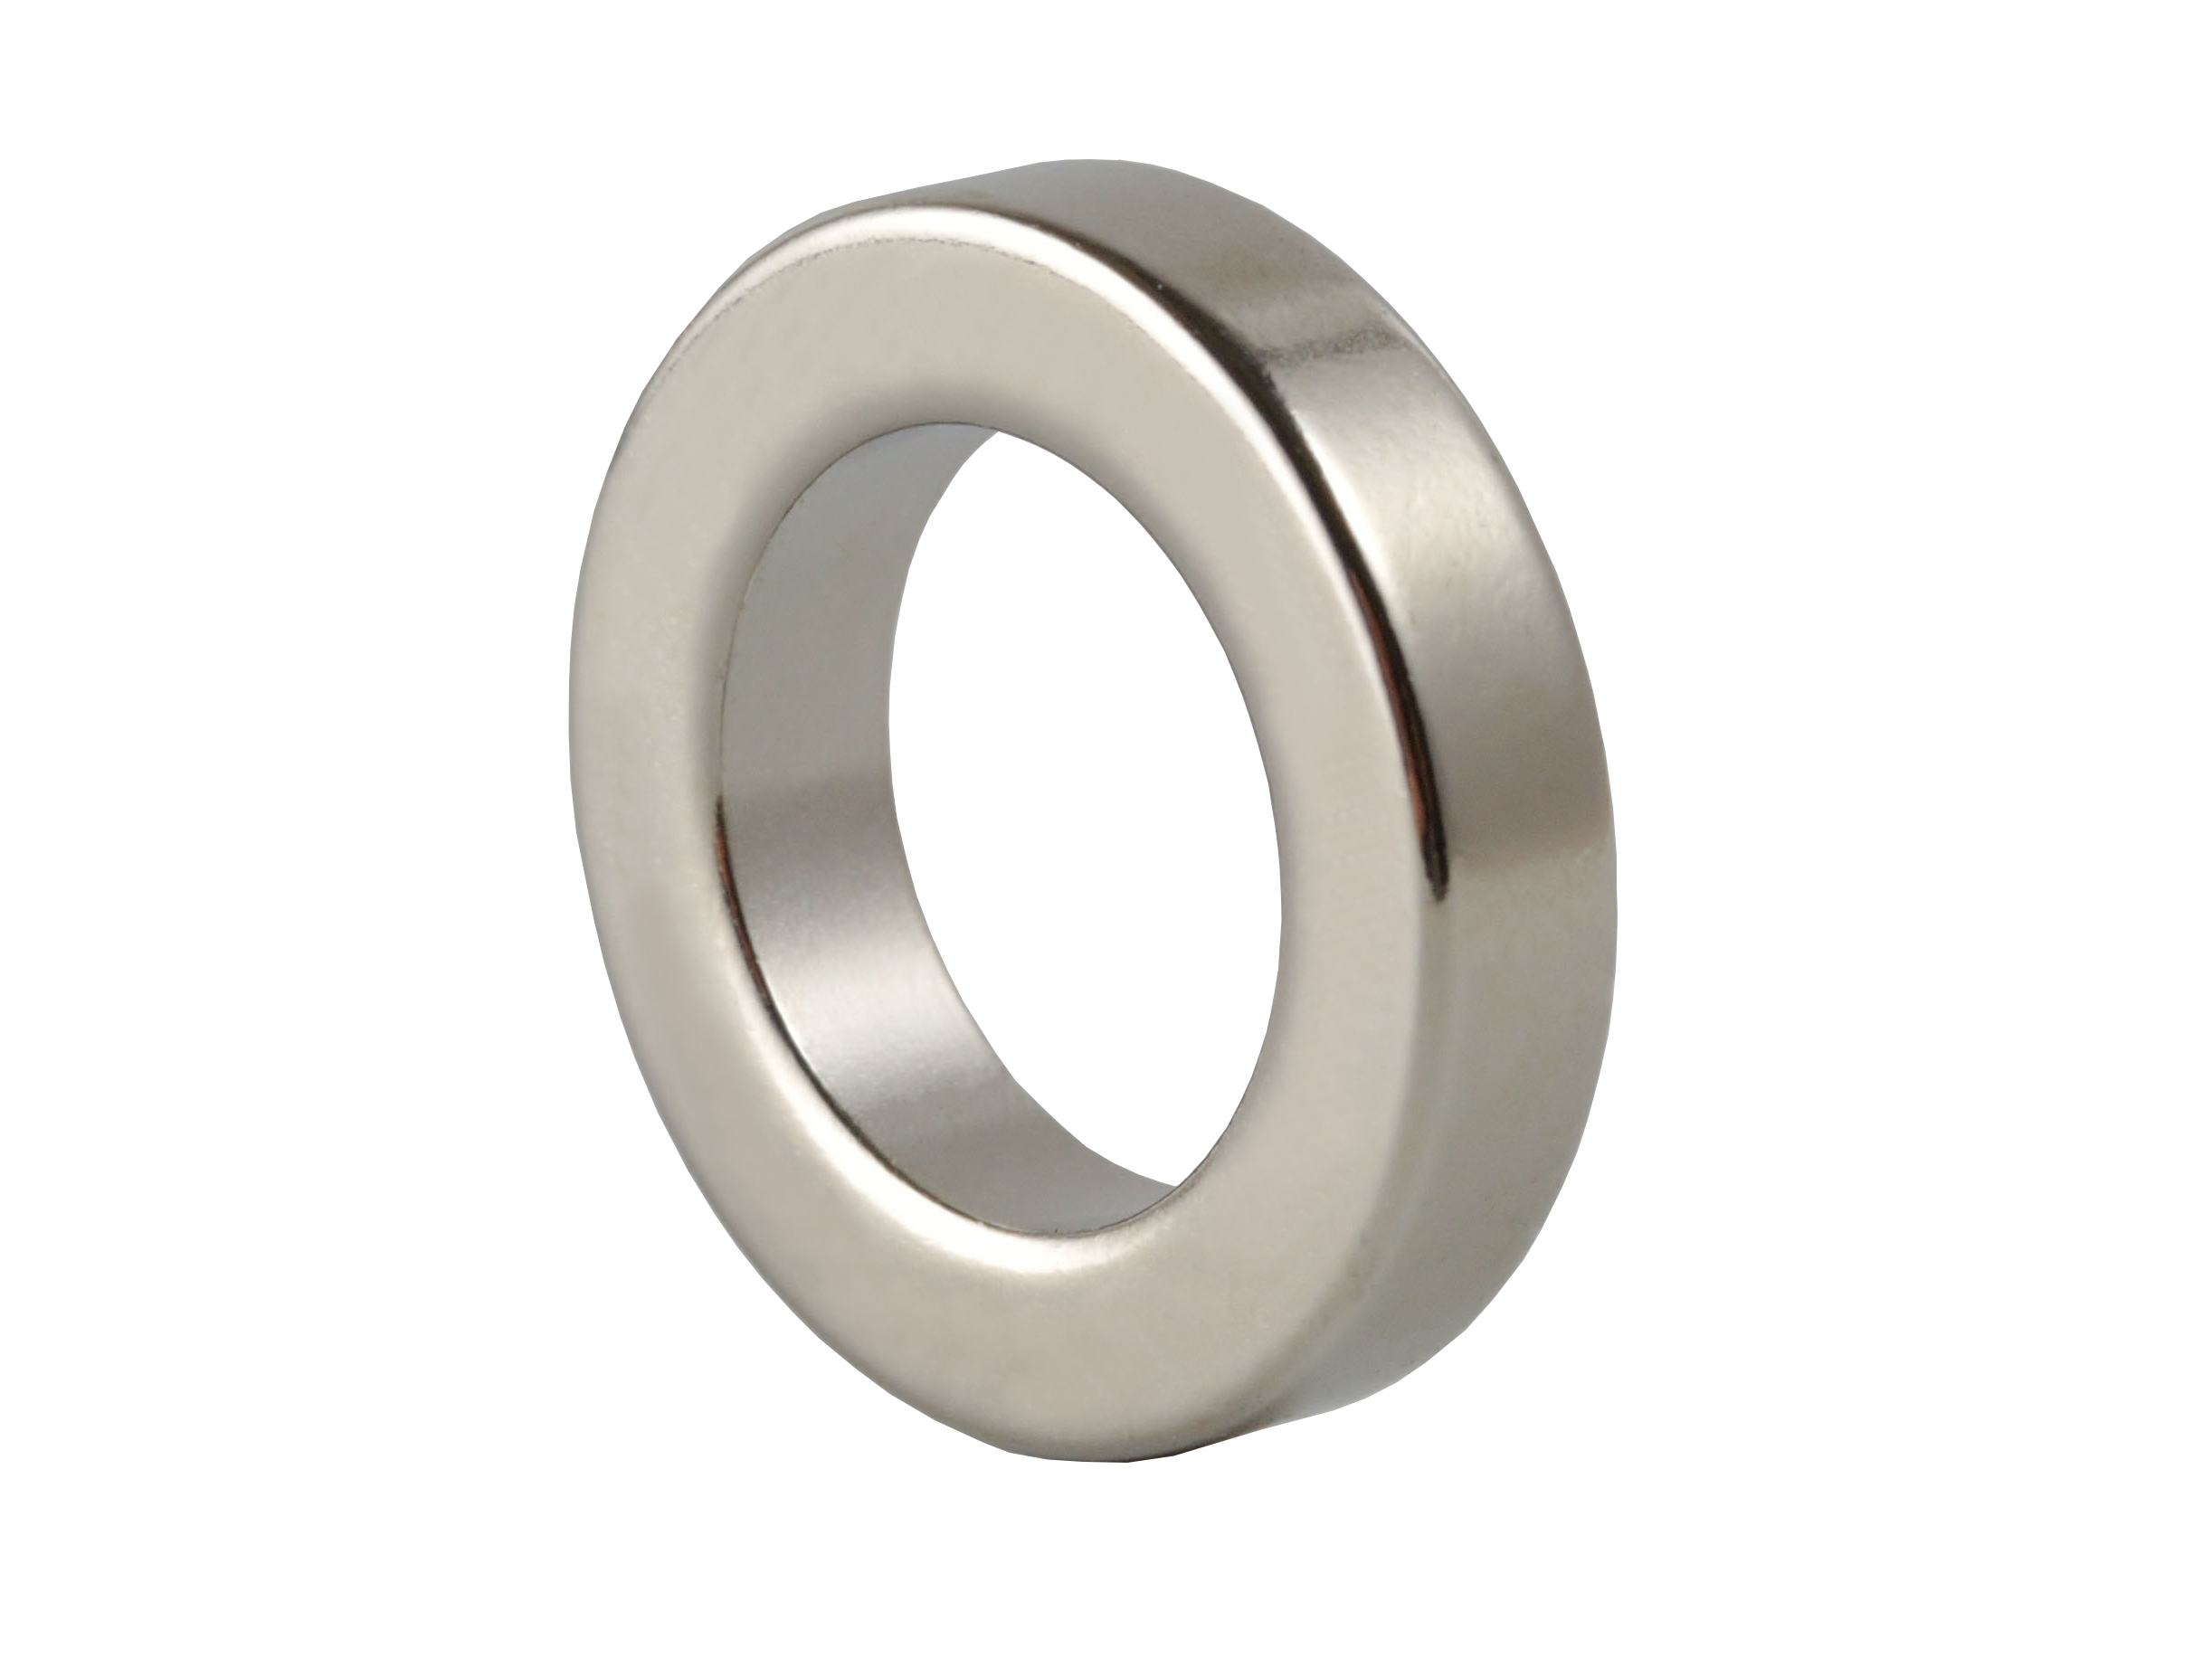 Ring‑Shaped Neodymium Magnet (NOR037) 